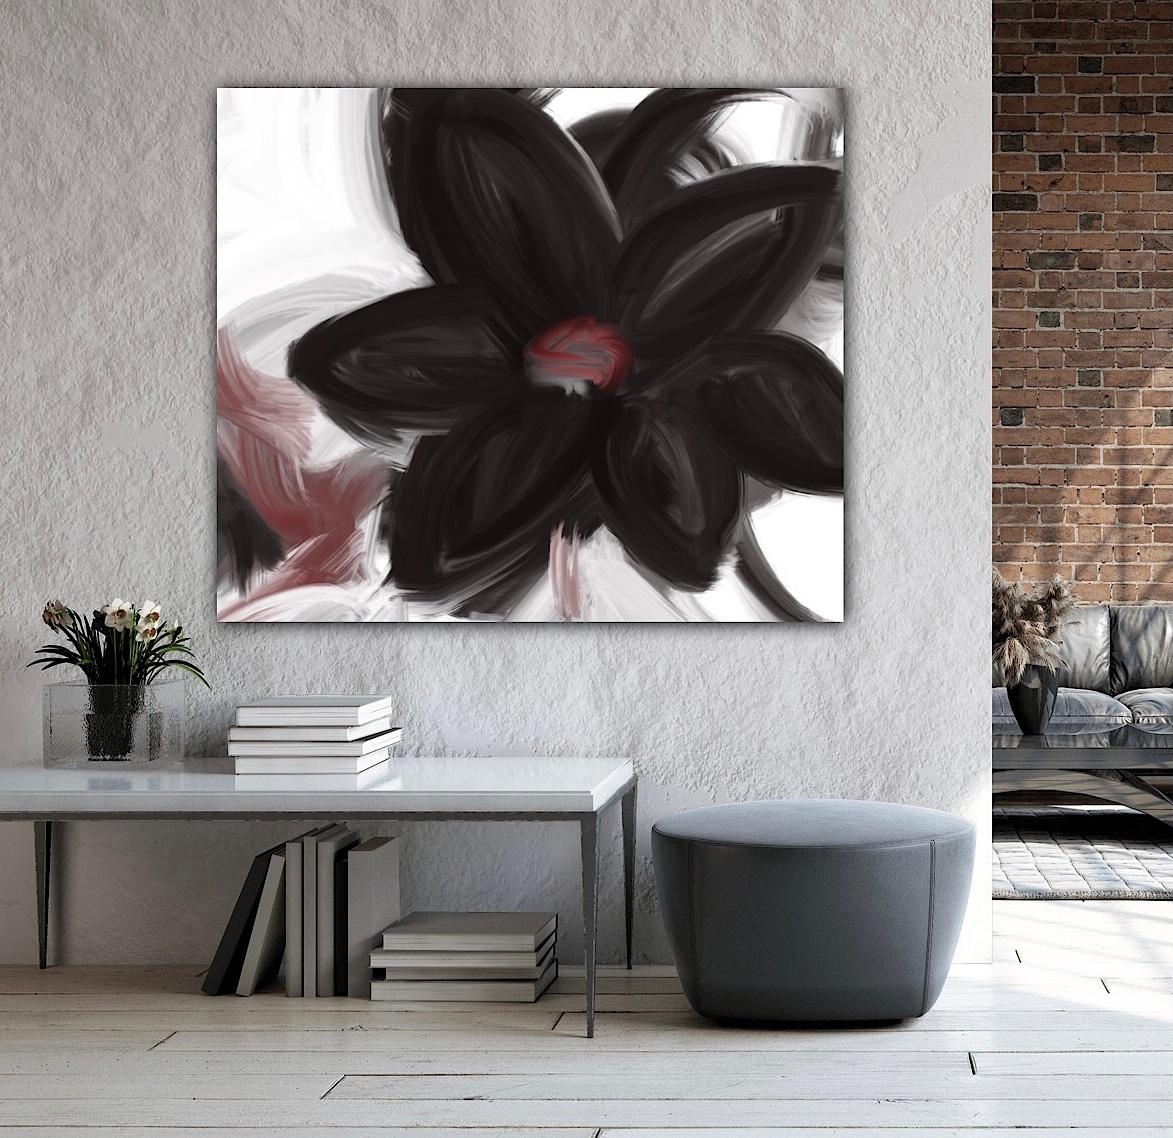 Magic of flower 🌺 - habt ein schönes Wochenende ☀️

#Kunstdruck #Deko #Blumen #couchliebt #couchstyle #wohnzimmer 